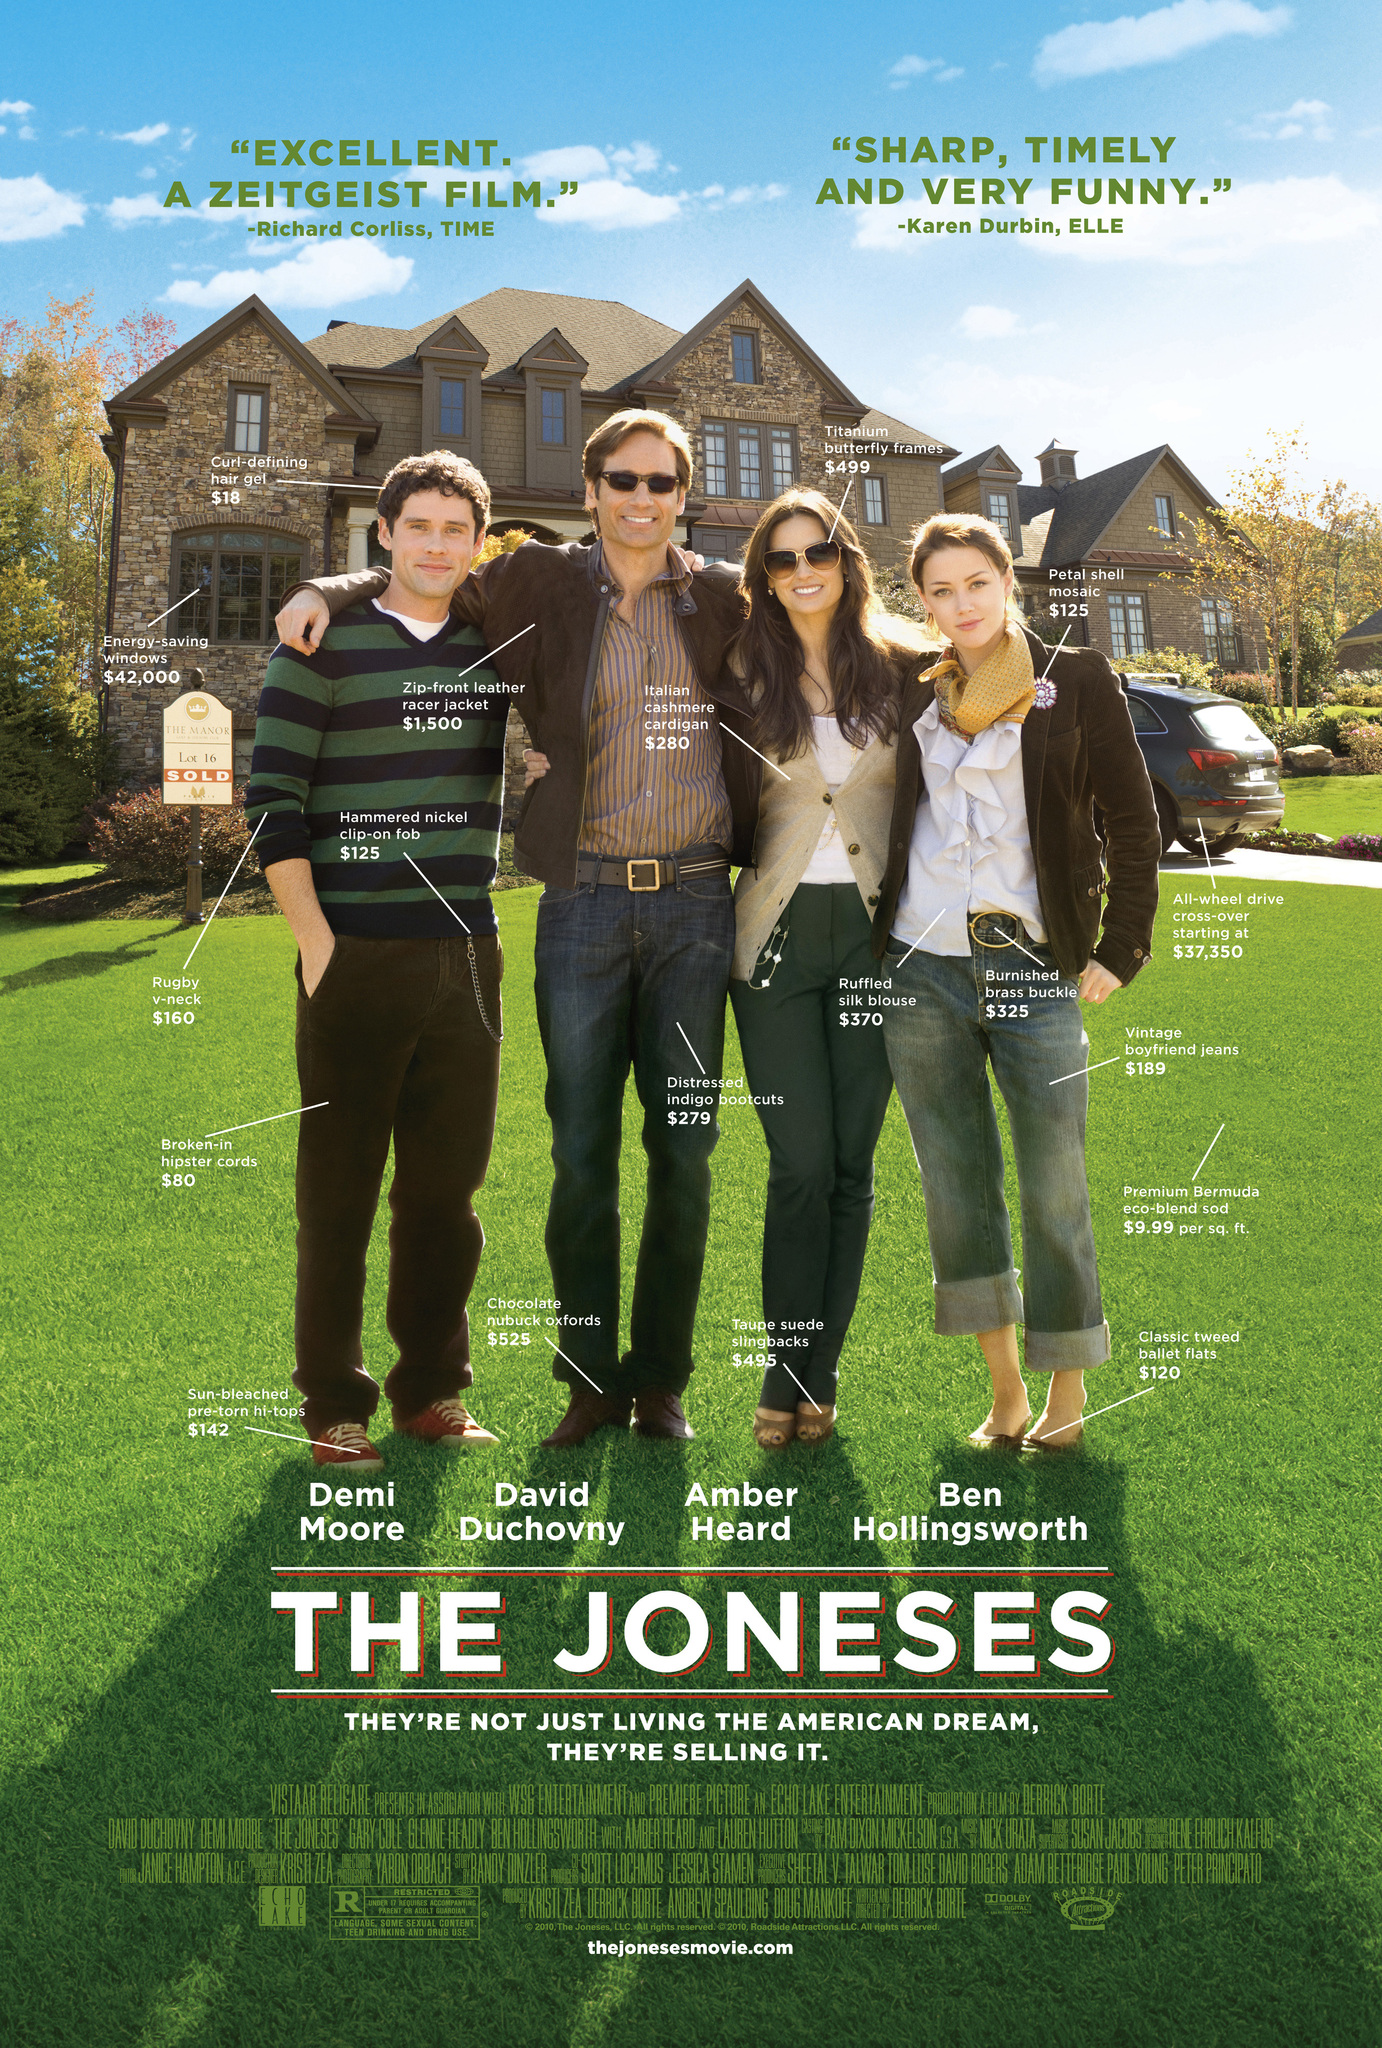 ดูหนังออนไลน์ฟรี The Joneses (2009) แฟมิลี่ลวงโลก